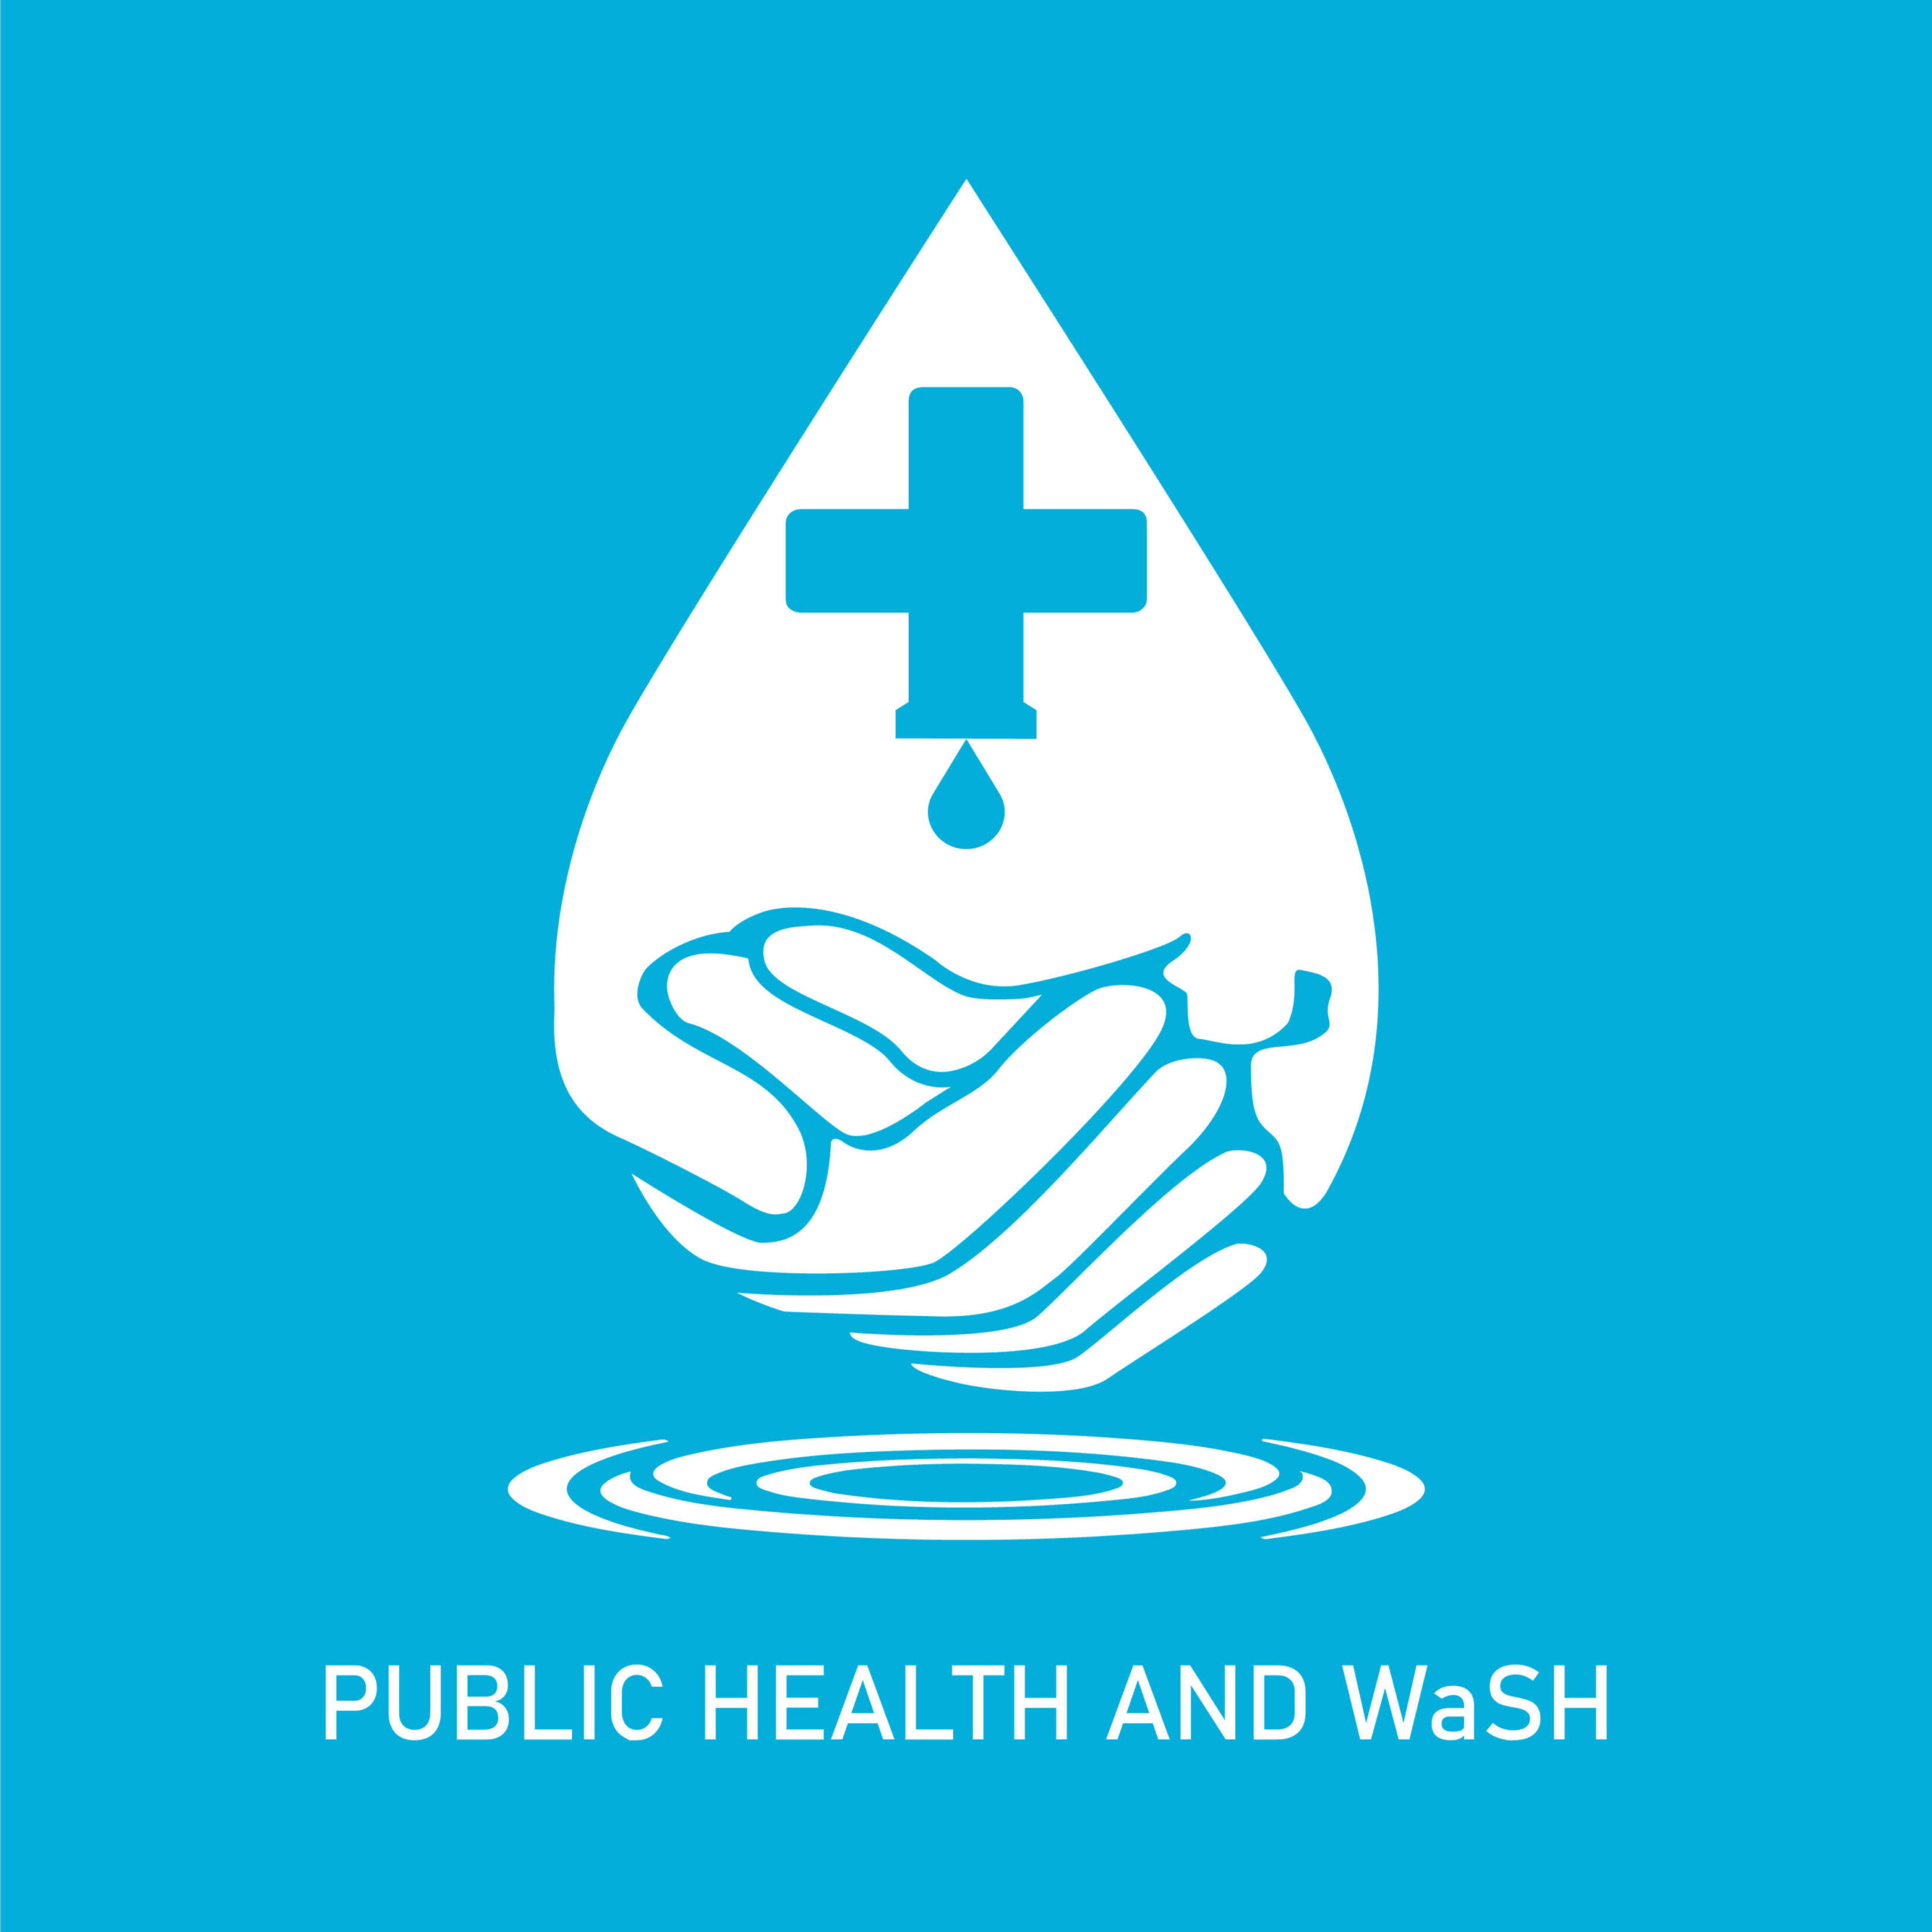 dm watch's Public health and WaSH logo